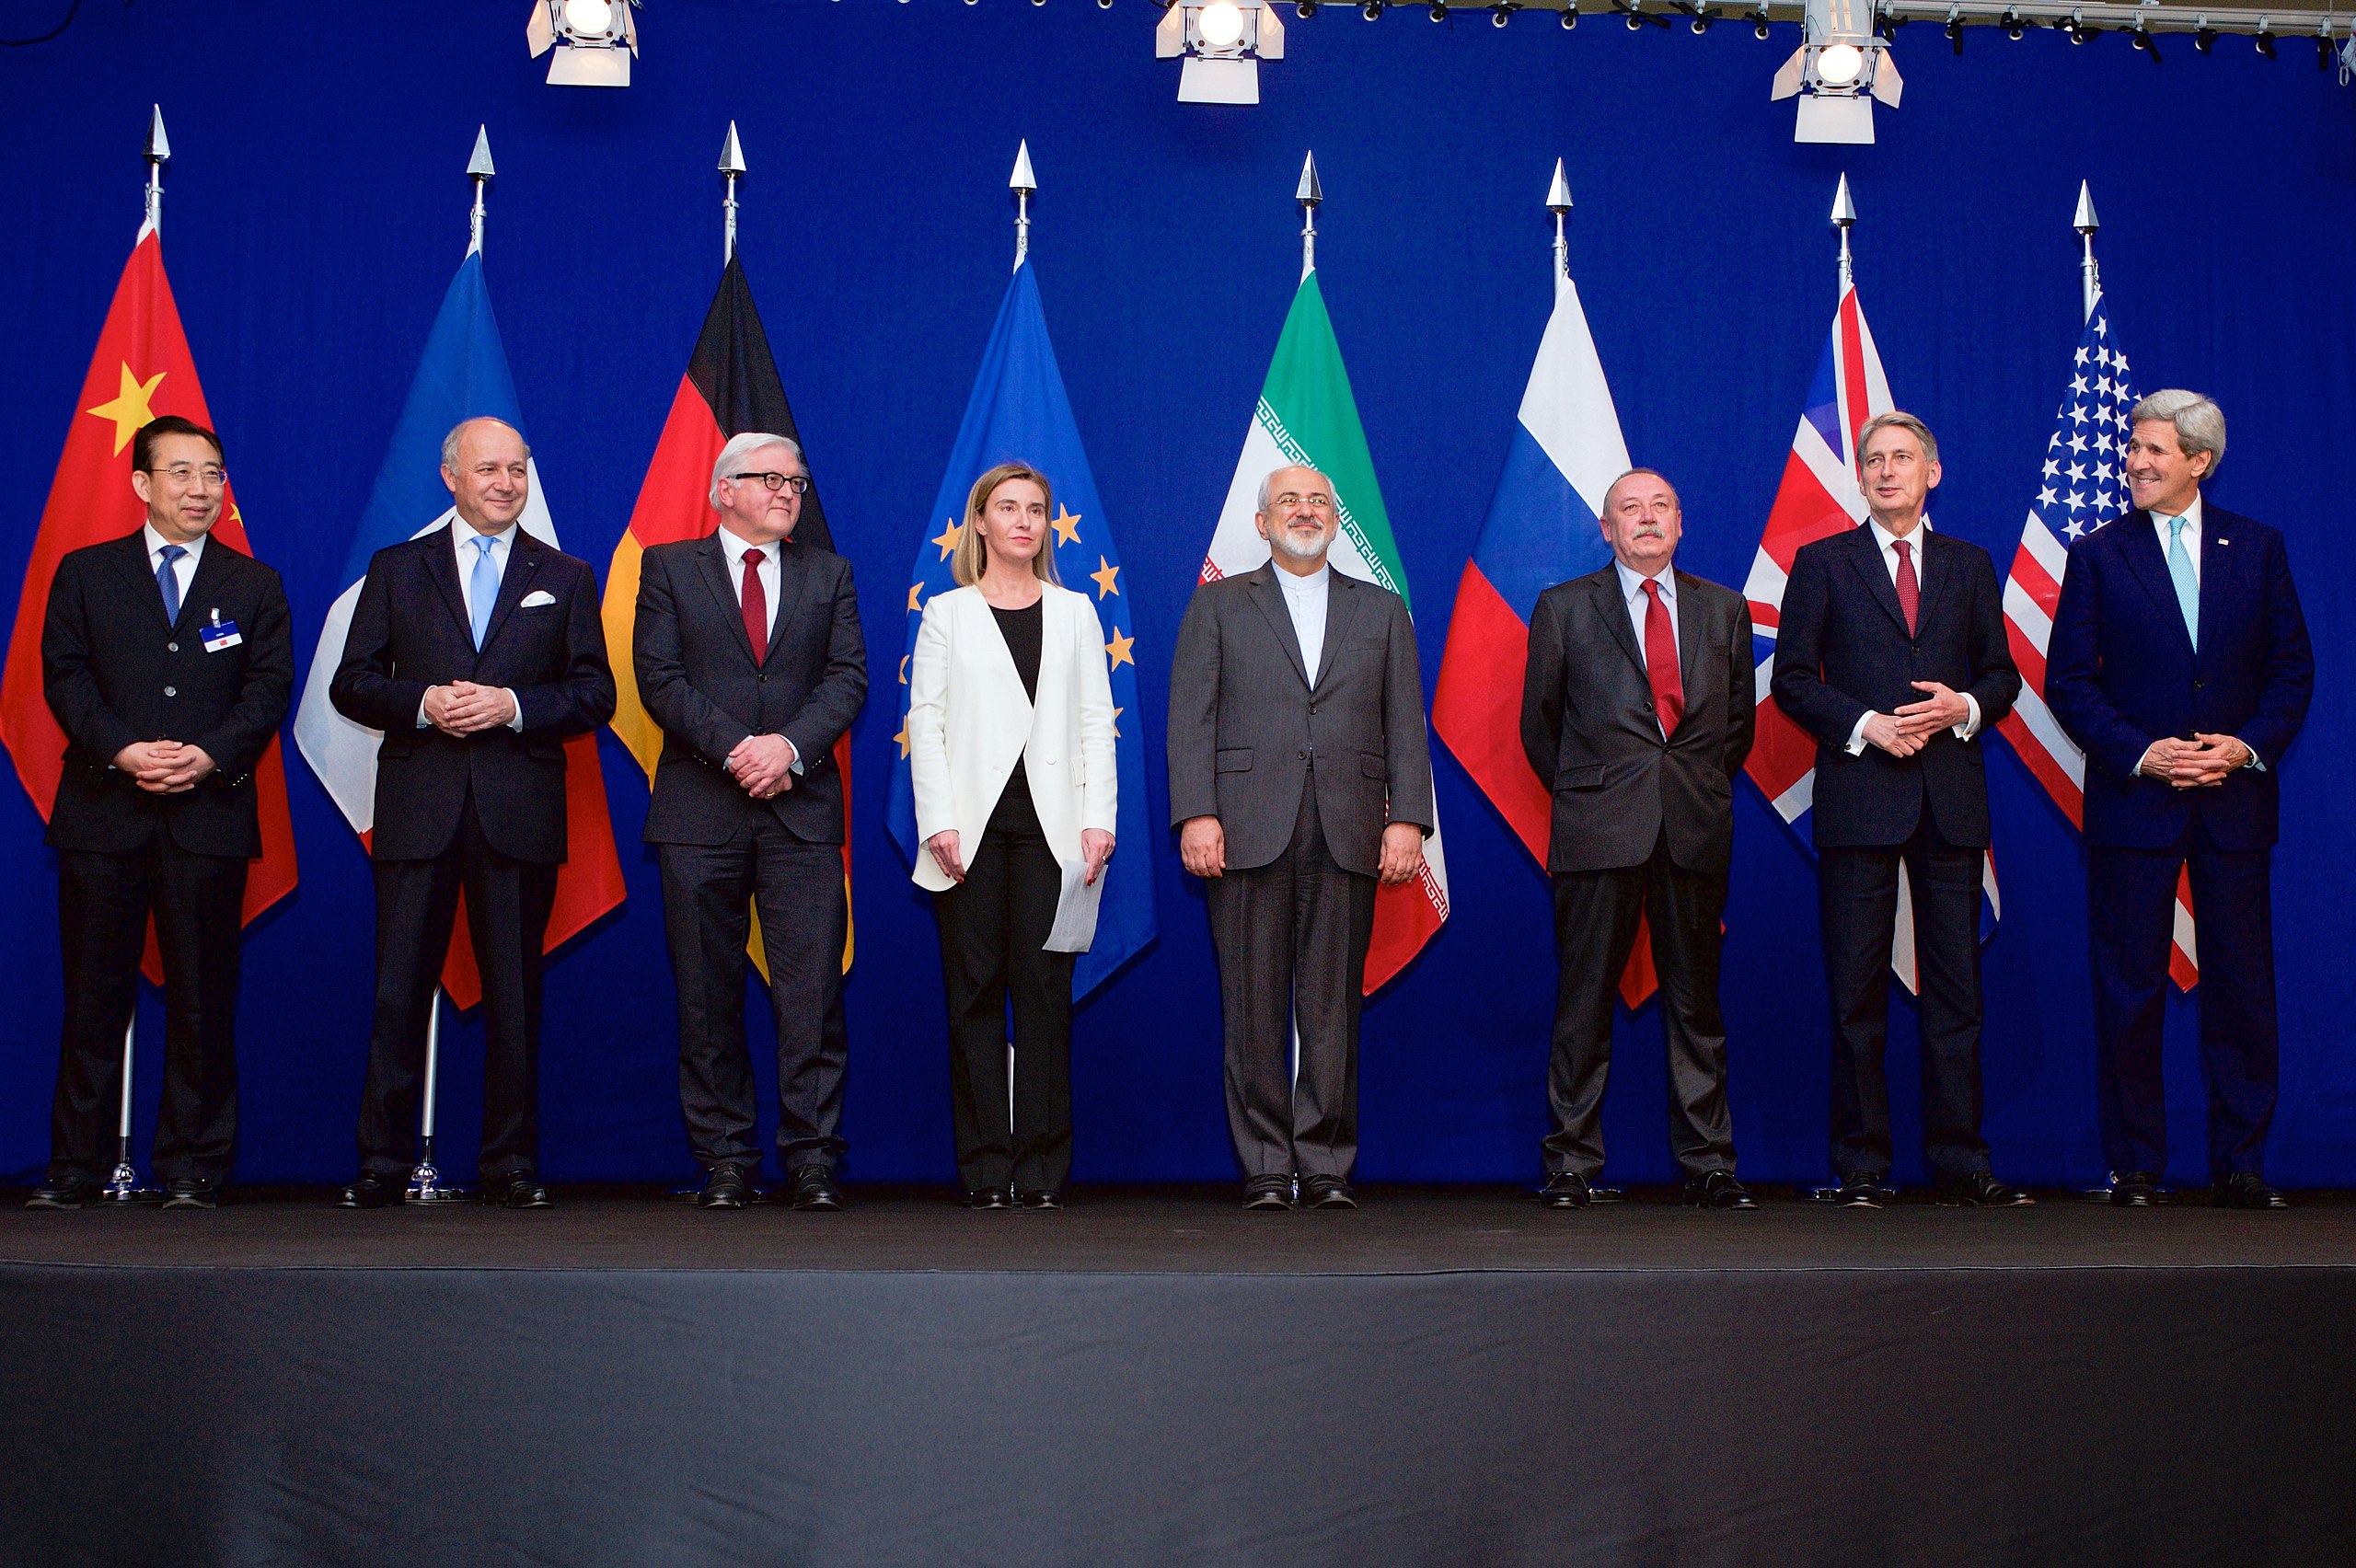 En rekke utenriksministere står foran sine lands flagg på en scene.